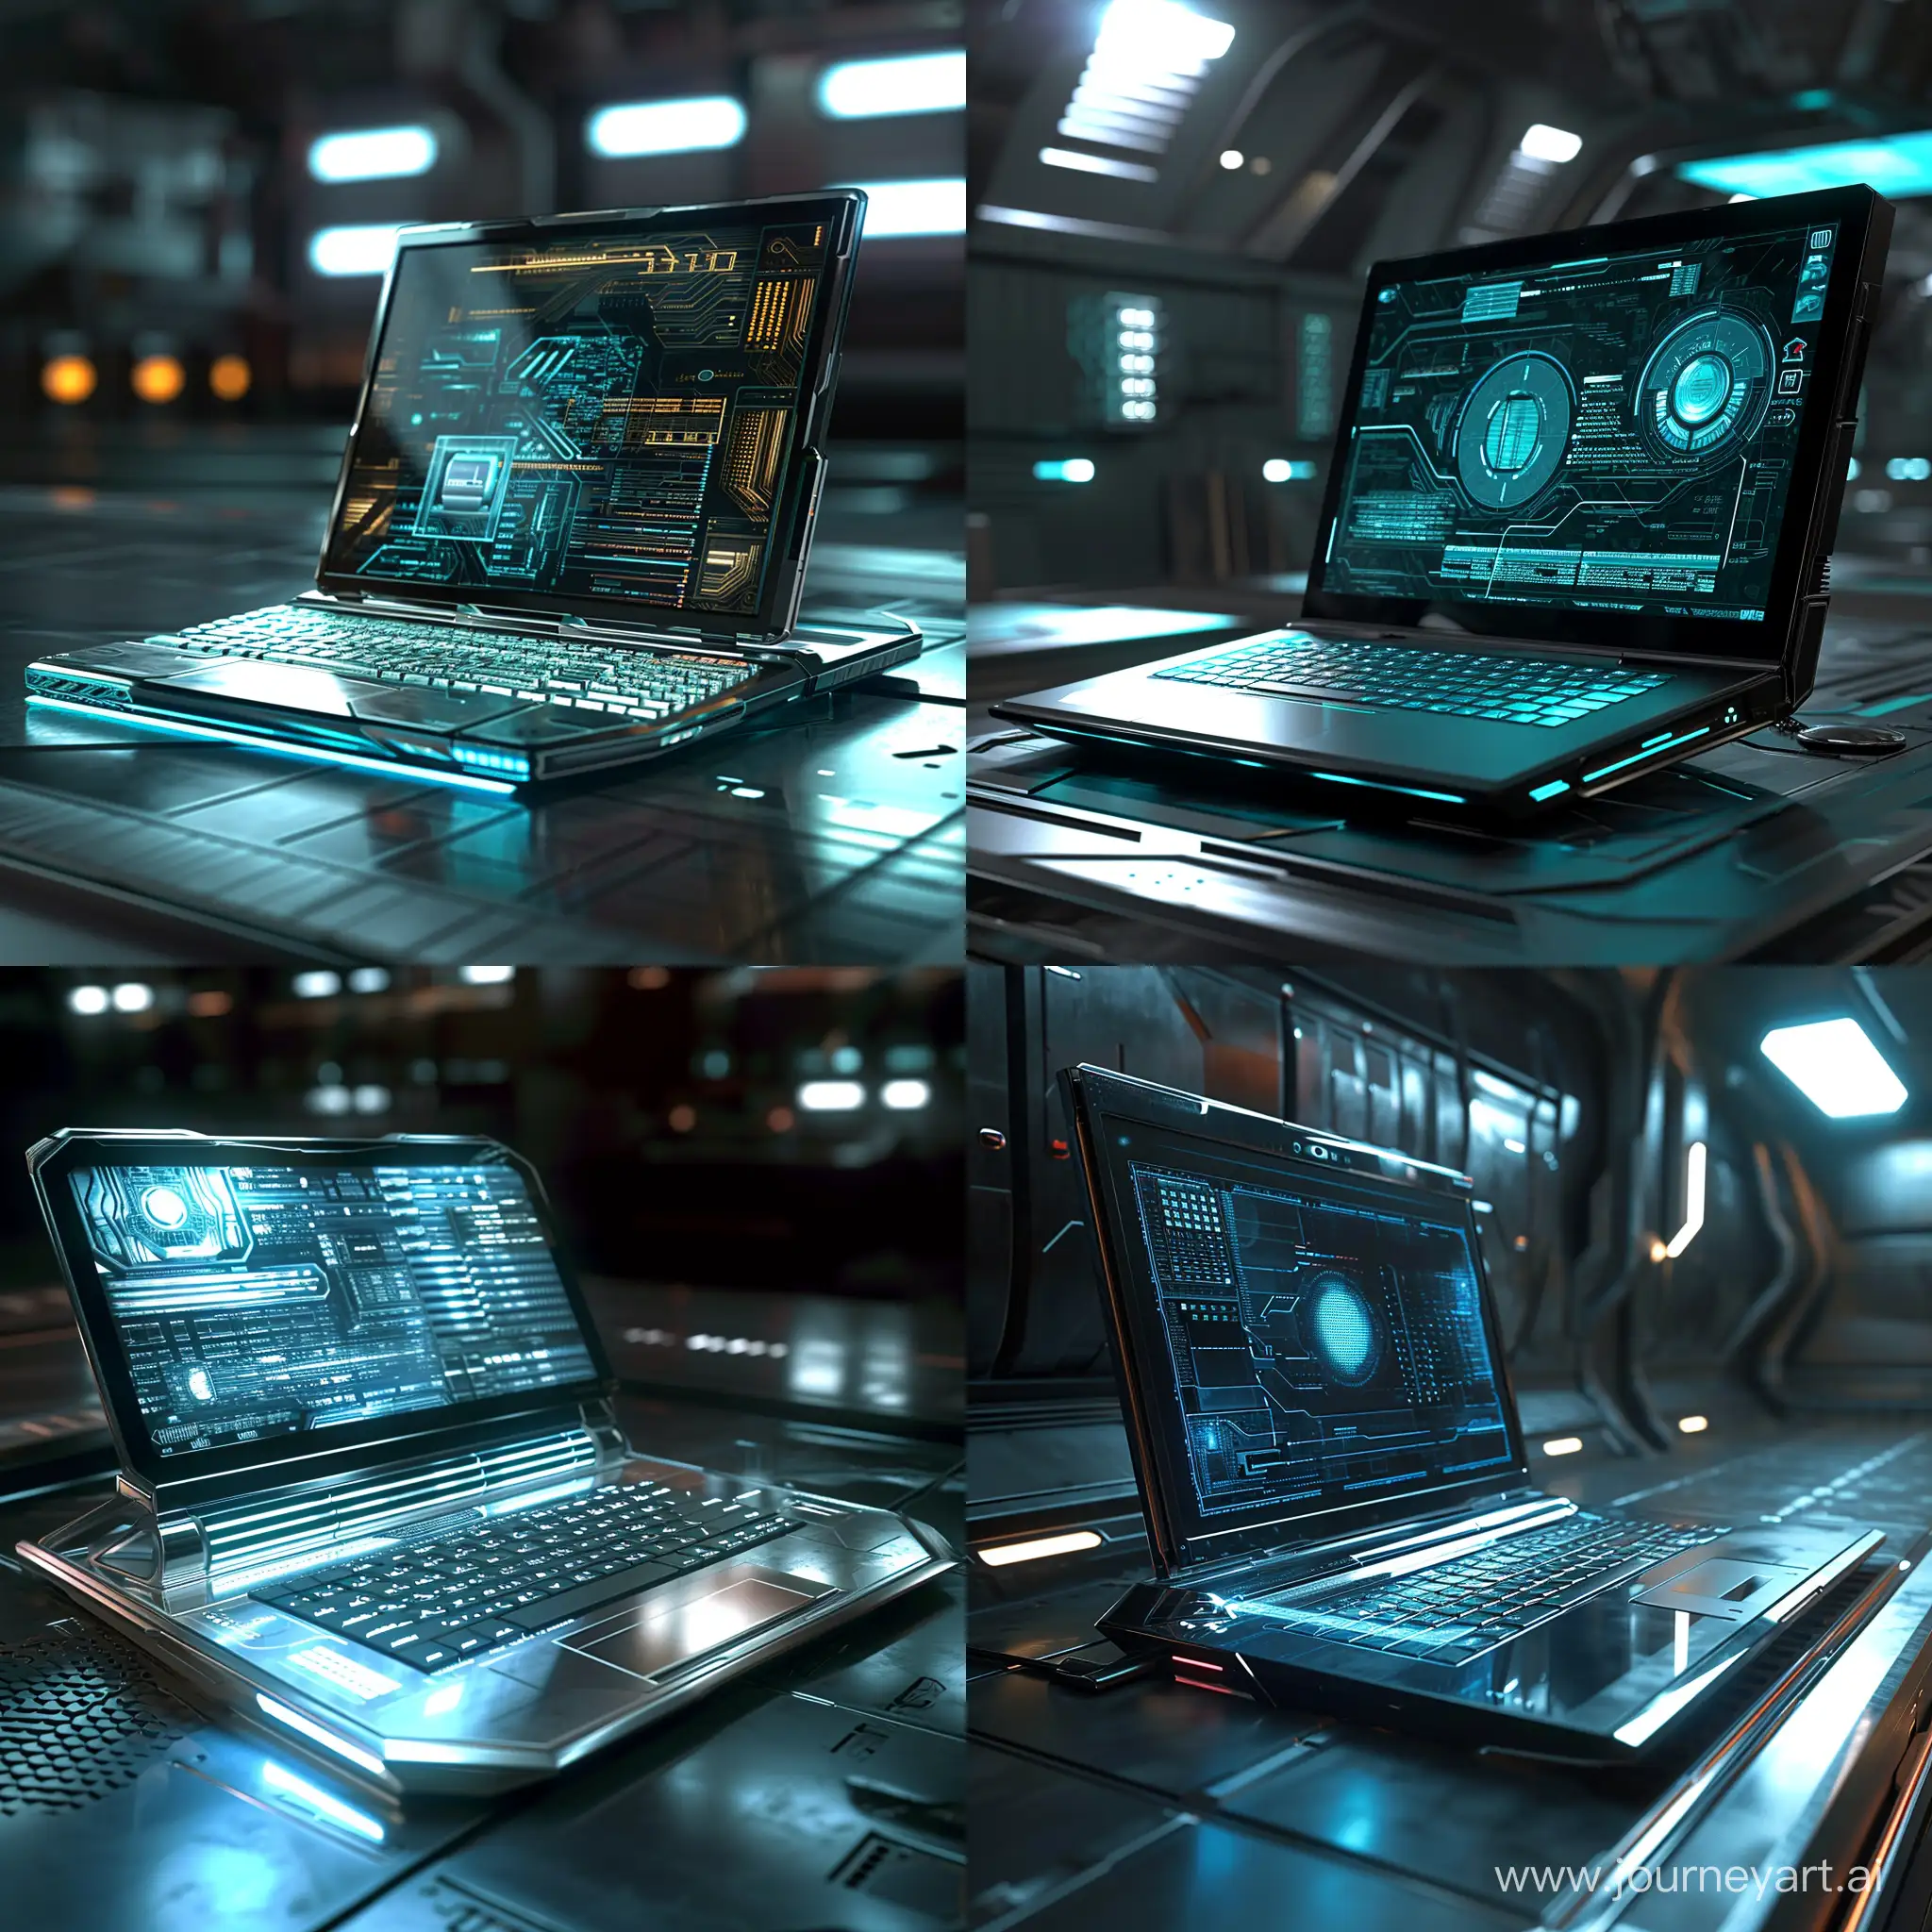 Futuristic-Laptop-Concept-Art-with-CuttingEdge-Design